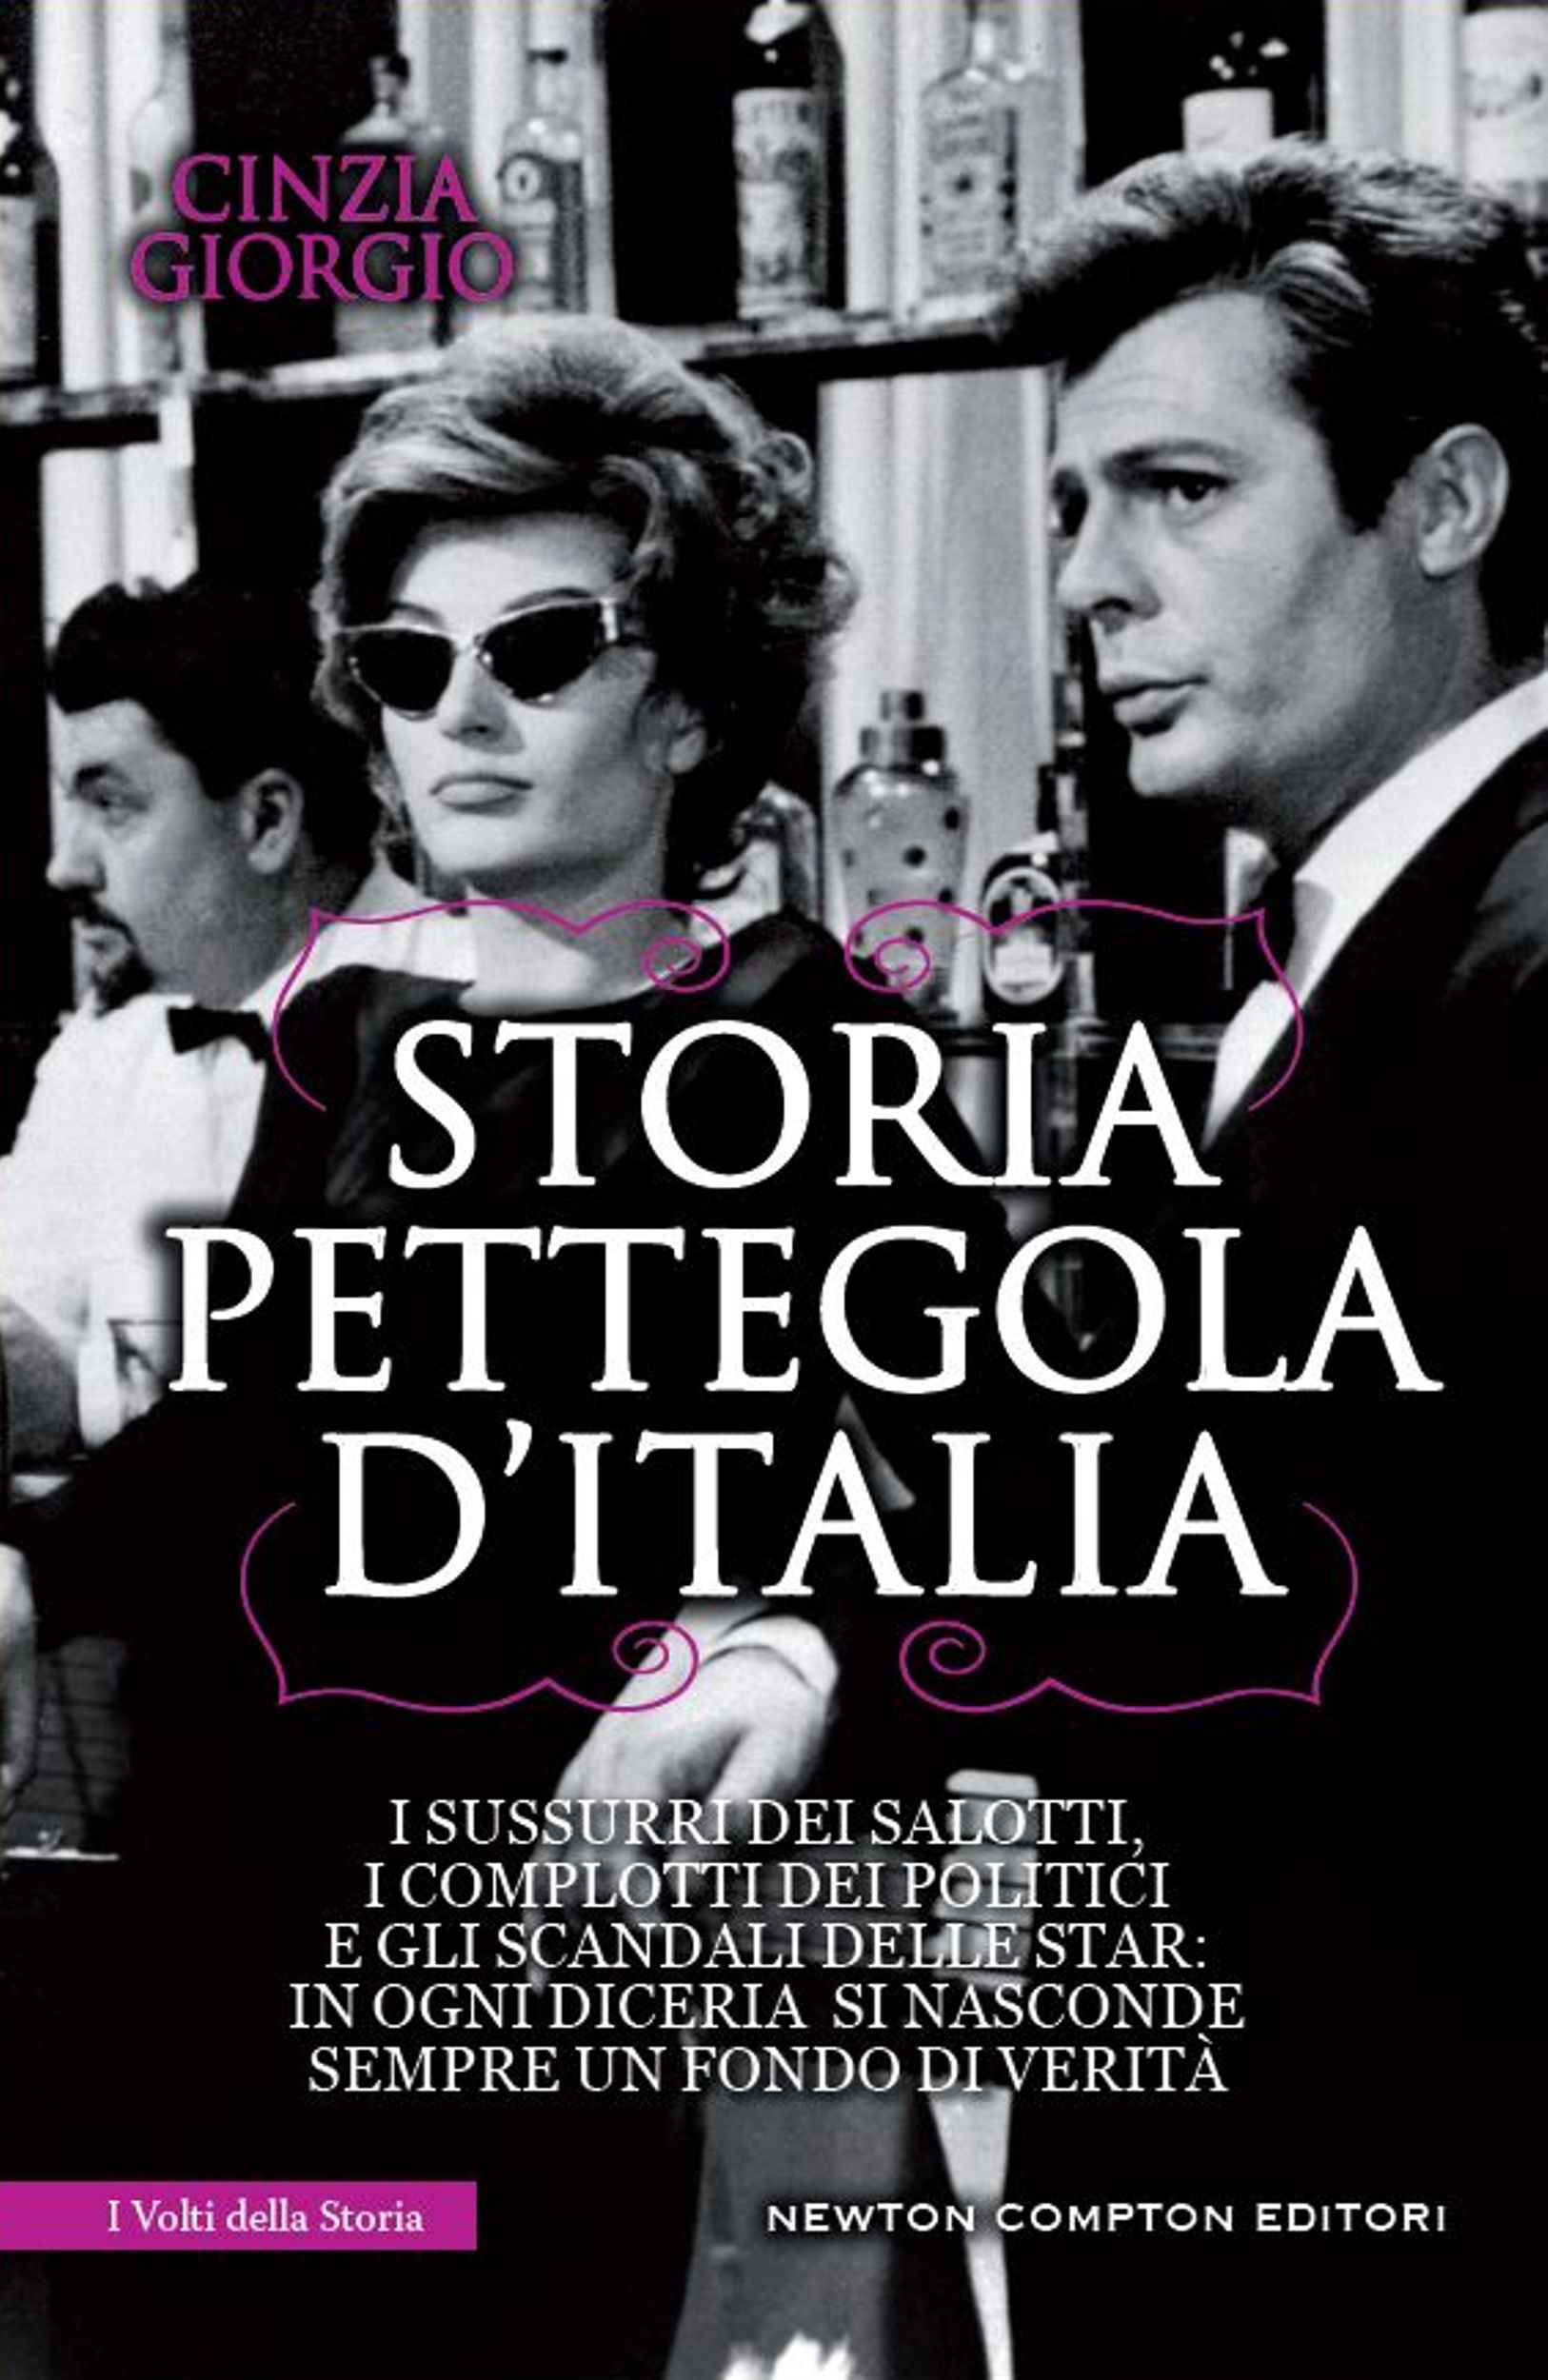 Storia pettegola d'Italia - Librerie.coop